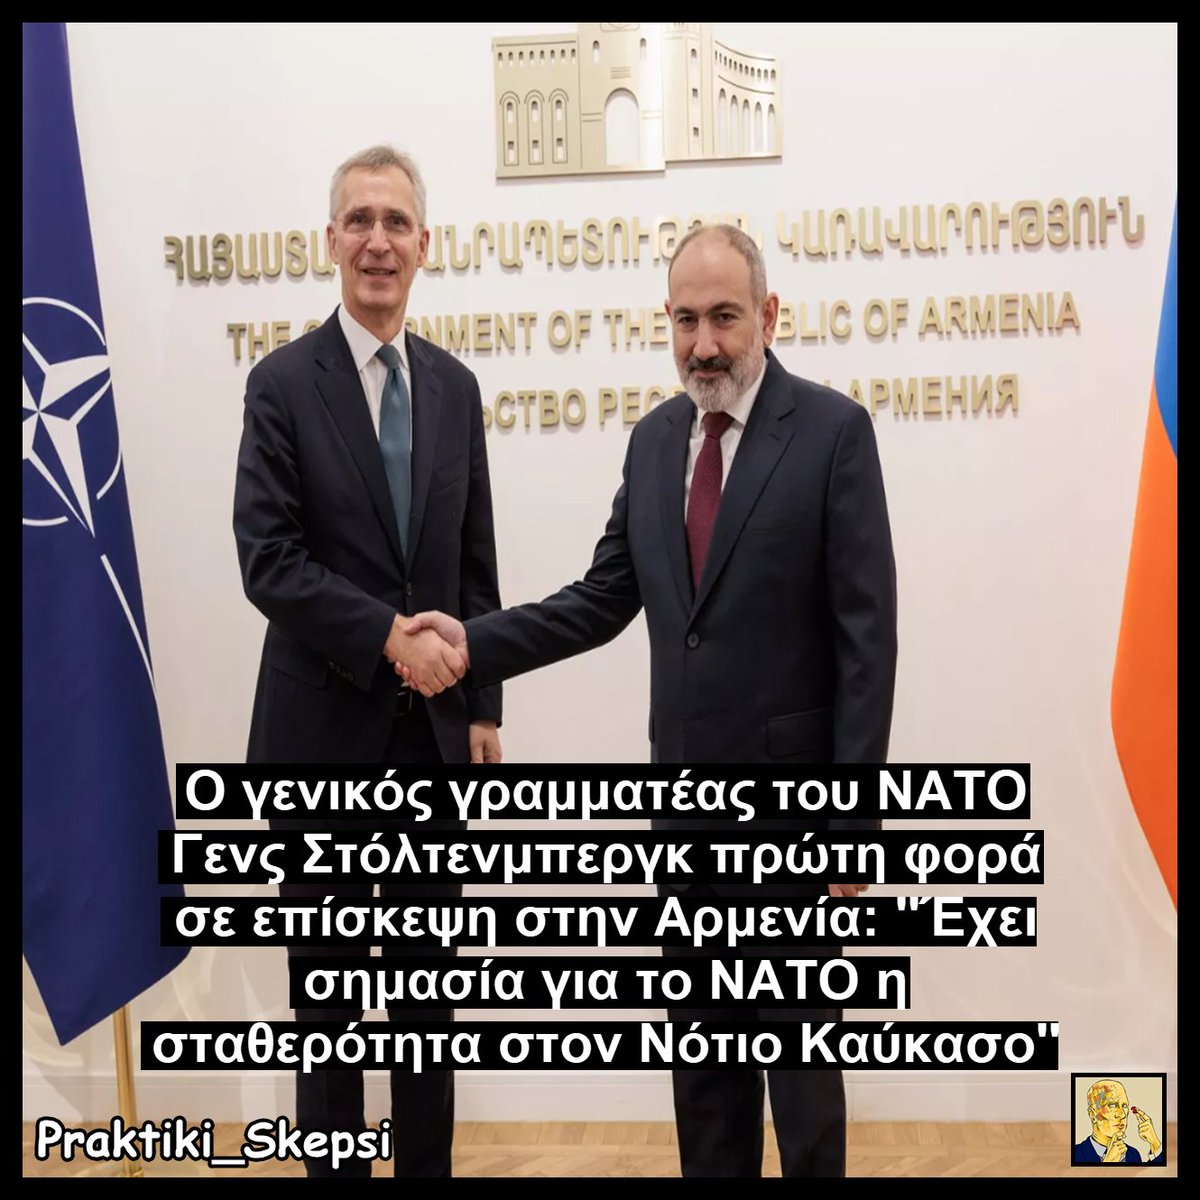 ‼️ Κατά την περιοδεία του στον Καύκασο αυτές τις μέρες, ο Γενς Στόλτενμπεργκ συναντήθηκε στην Αρμενία με τον πρωθυπουργό Πασινιάν. 

🇦🇲Η Αρμενία τα τελευταία χρόνια έχει αποφασίσει να απομακρυνθεί από την Ρωσική σφαίρα επιρροής και έχει ανοίξει διάλογο με το Δυτικό στρατόπεδο.